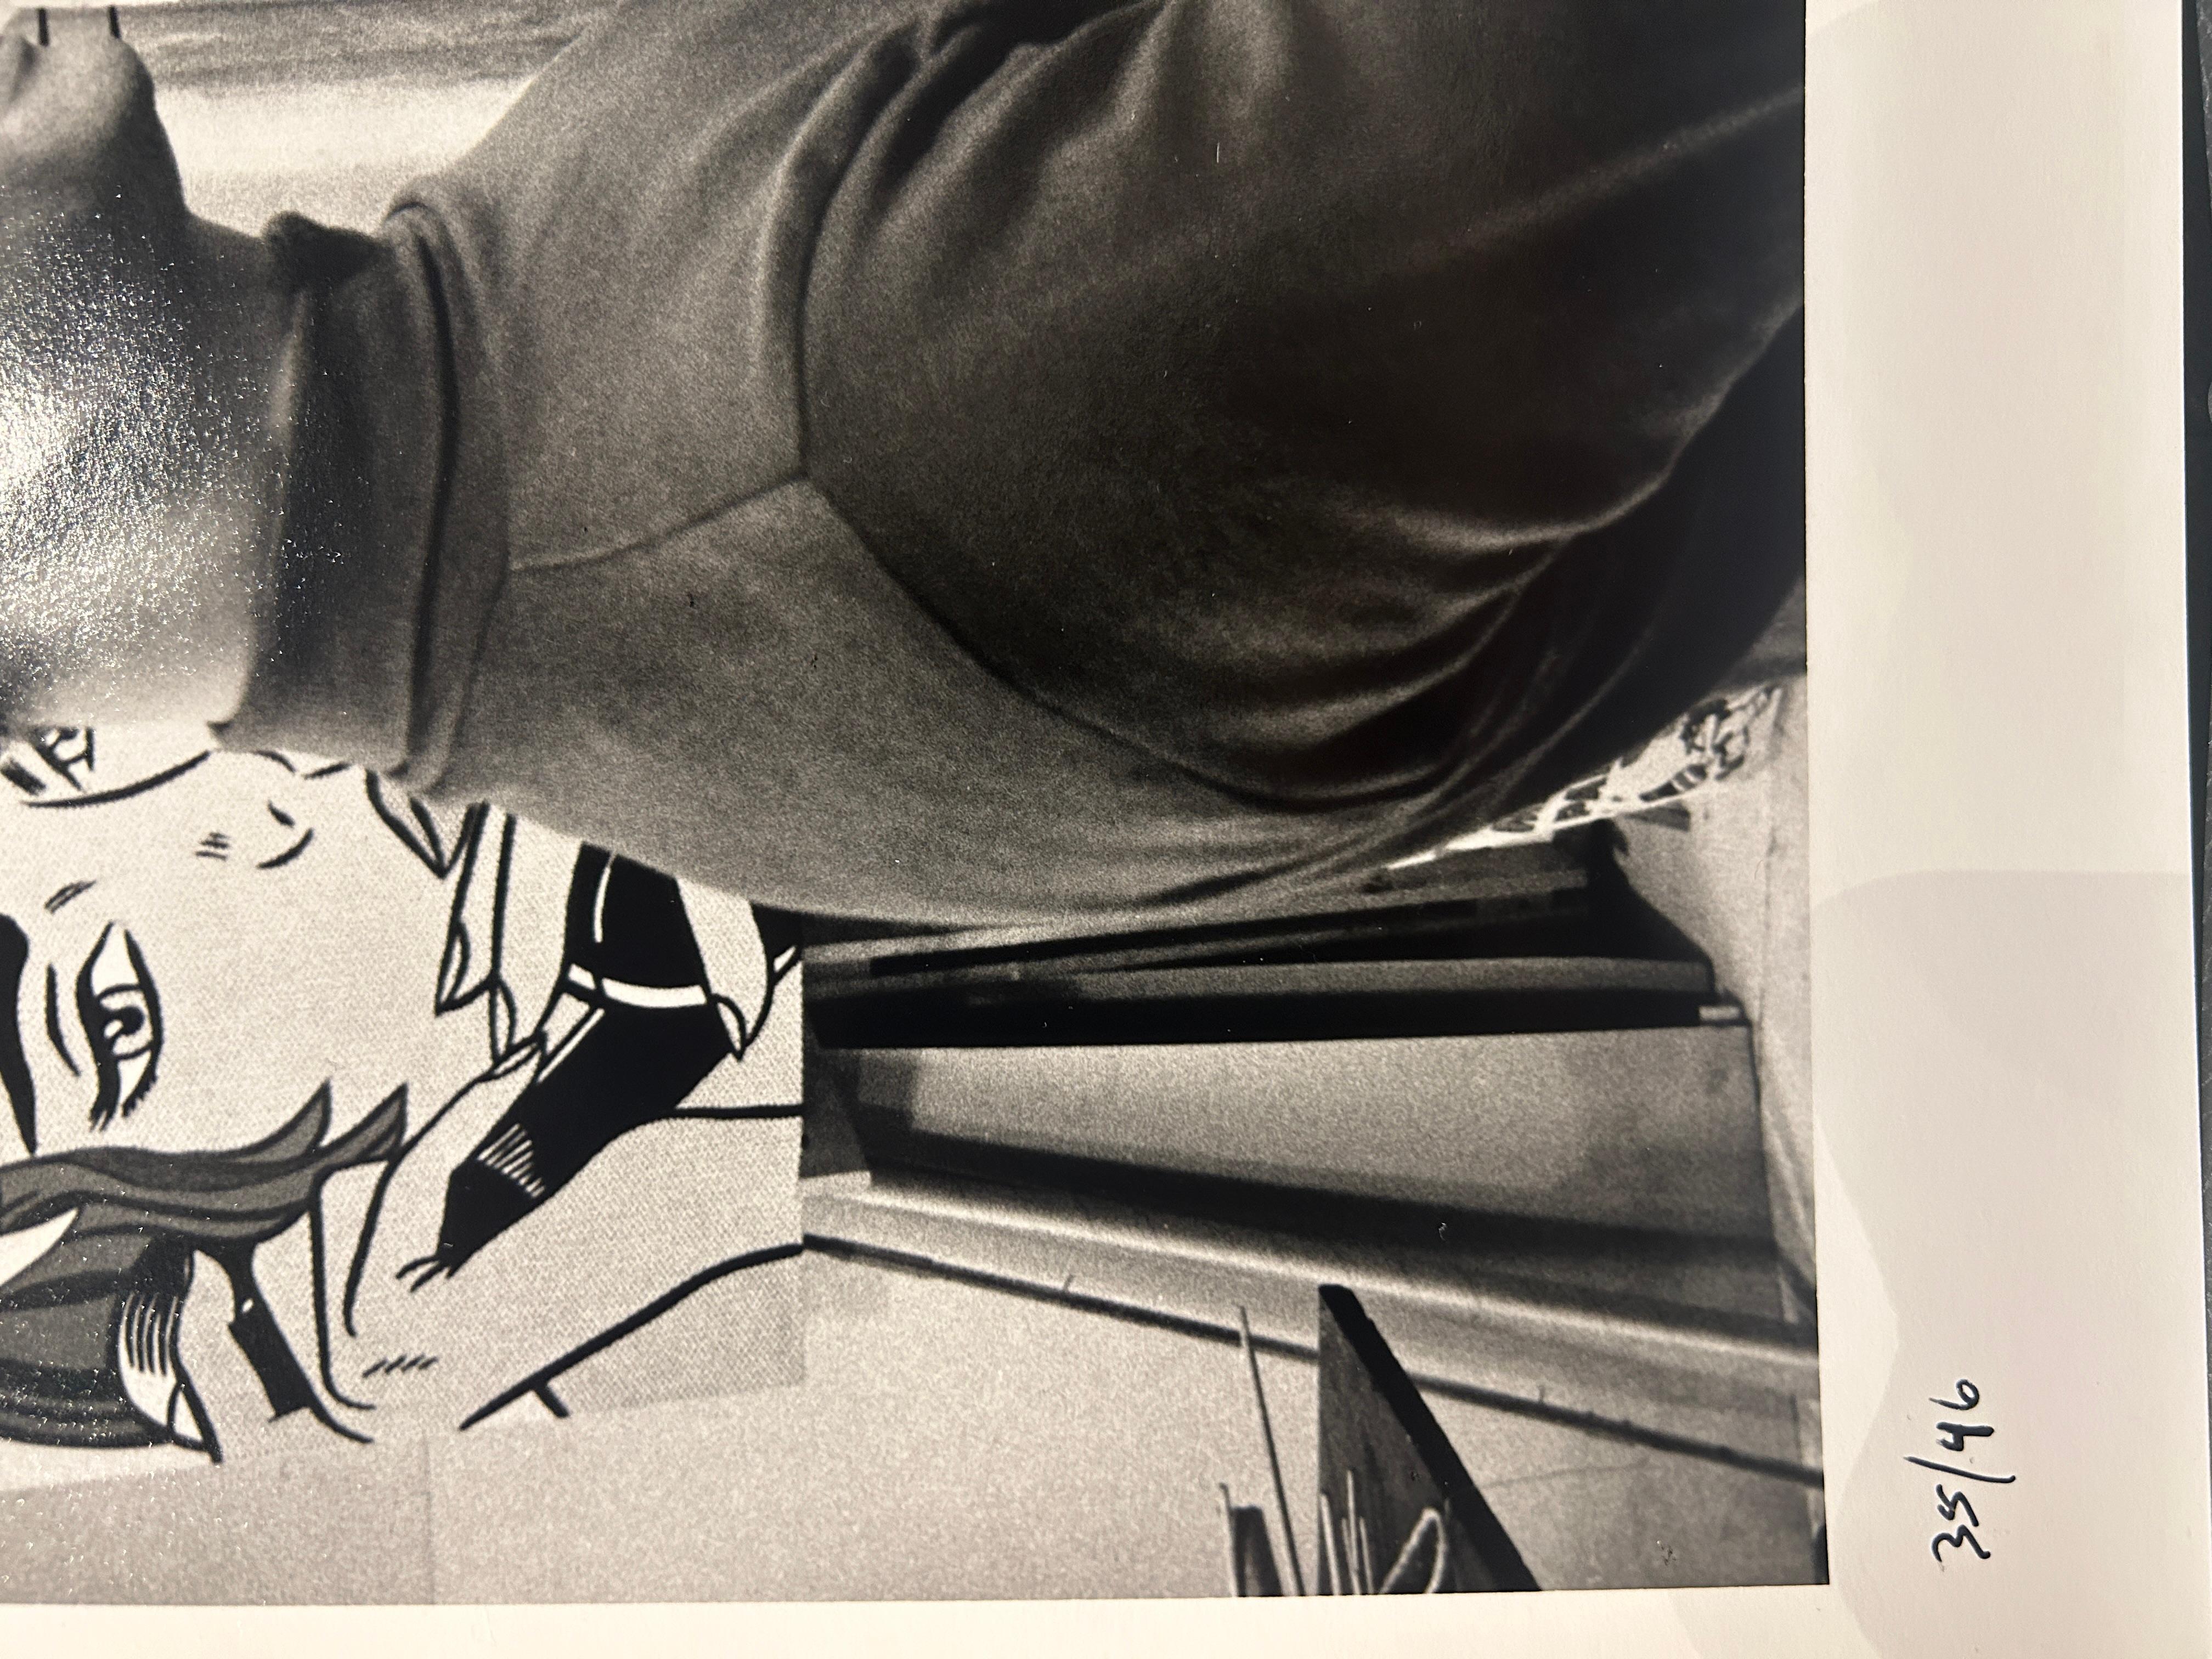 The Pop Artists: Roy Lichtenstein, 1964 - Photograph by Ken Heyman